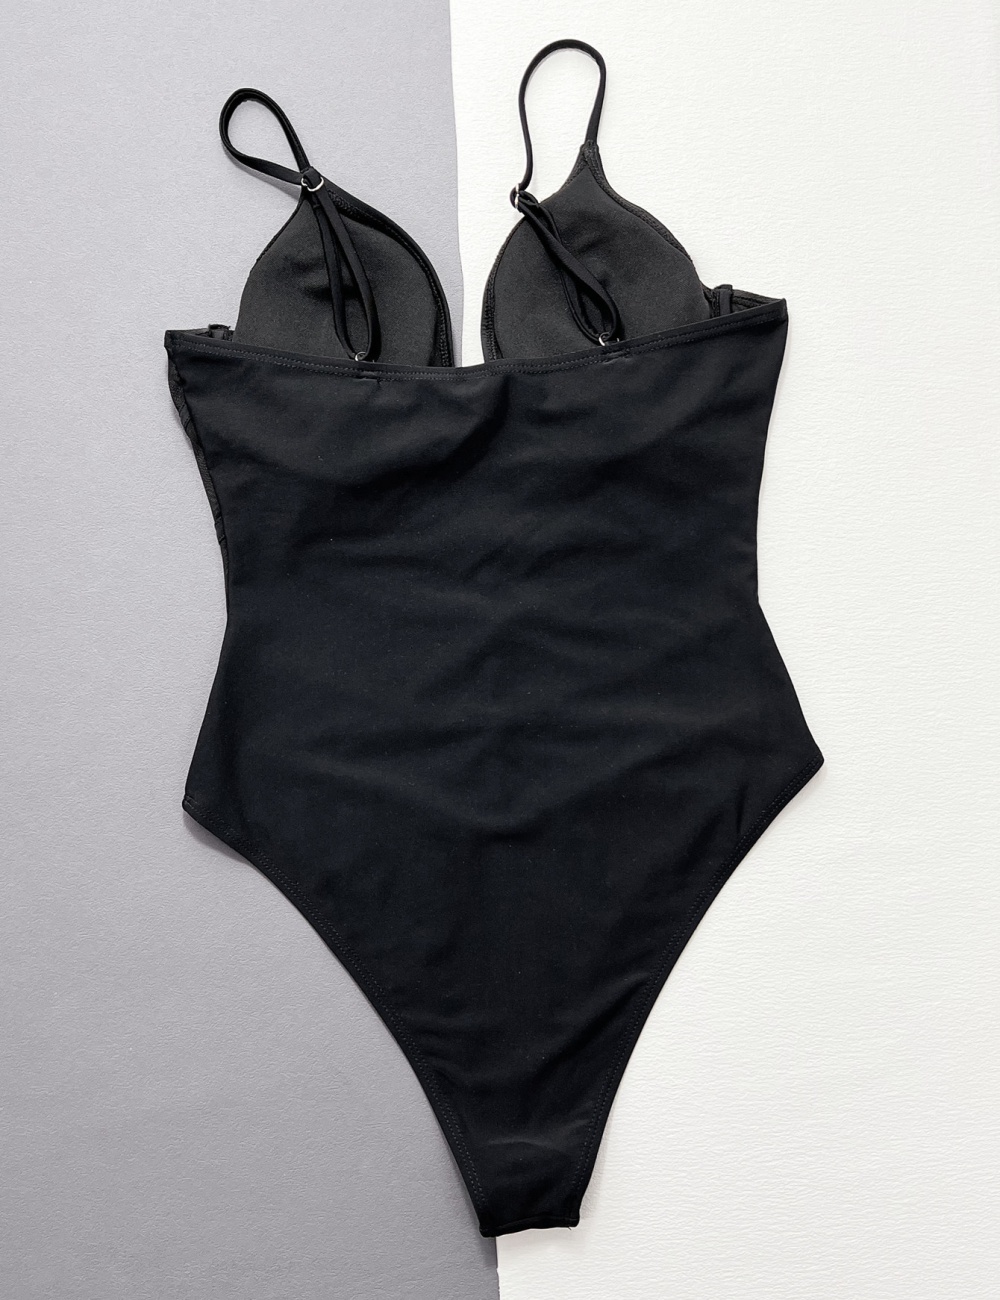 European style integrated conjoined bikini swimwear